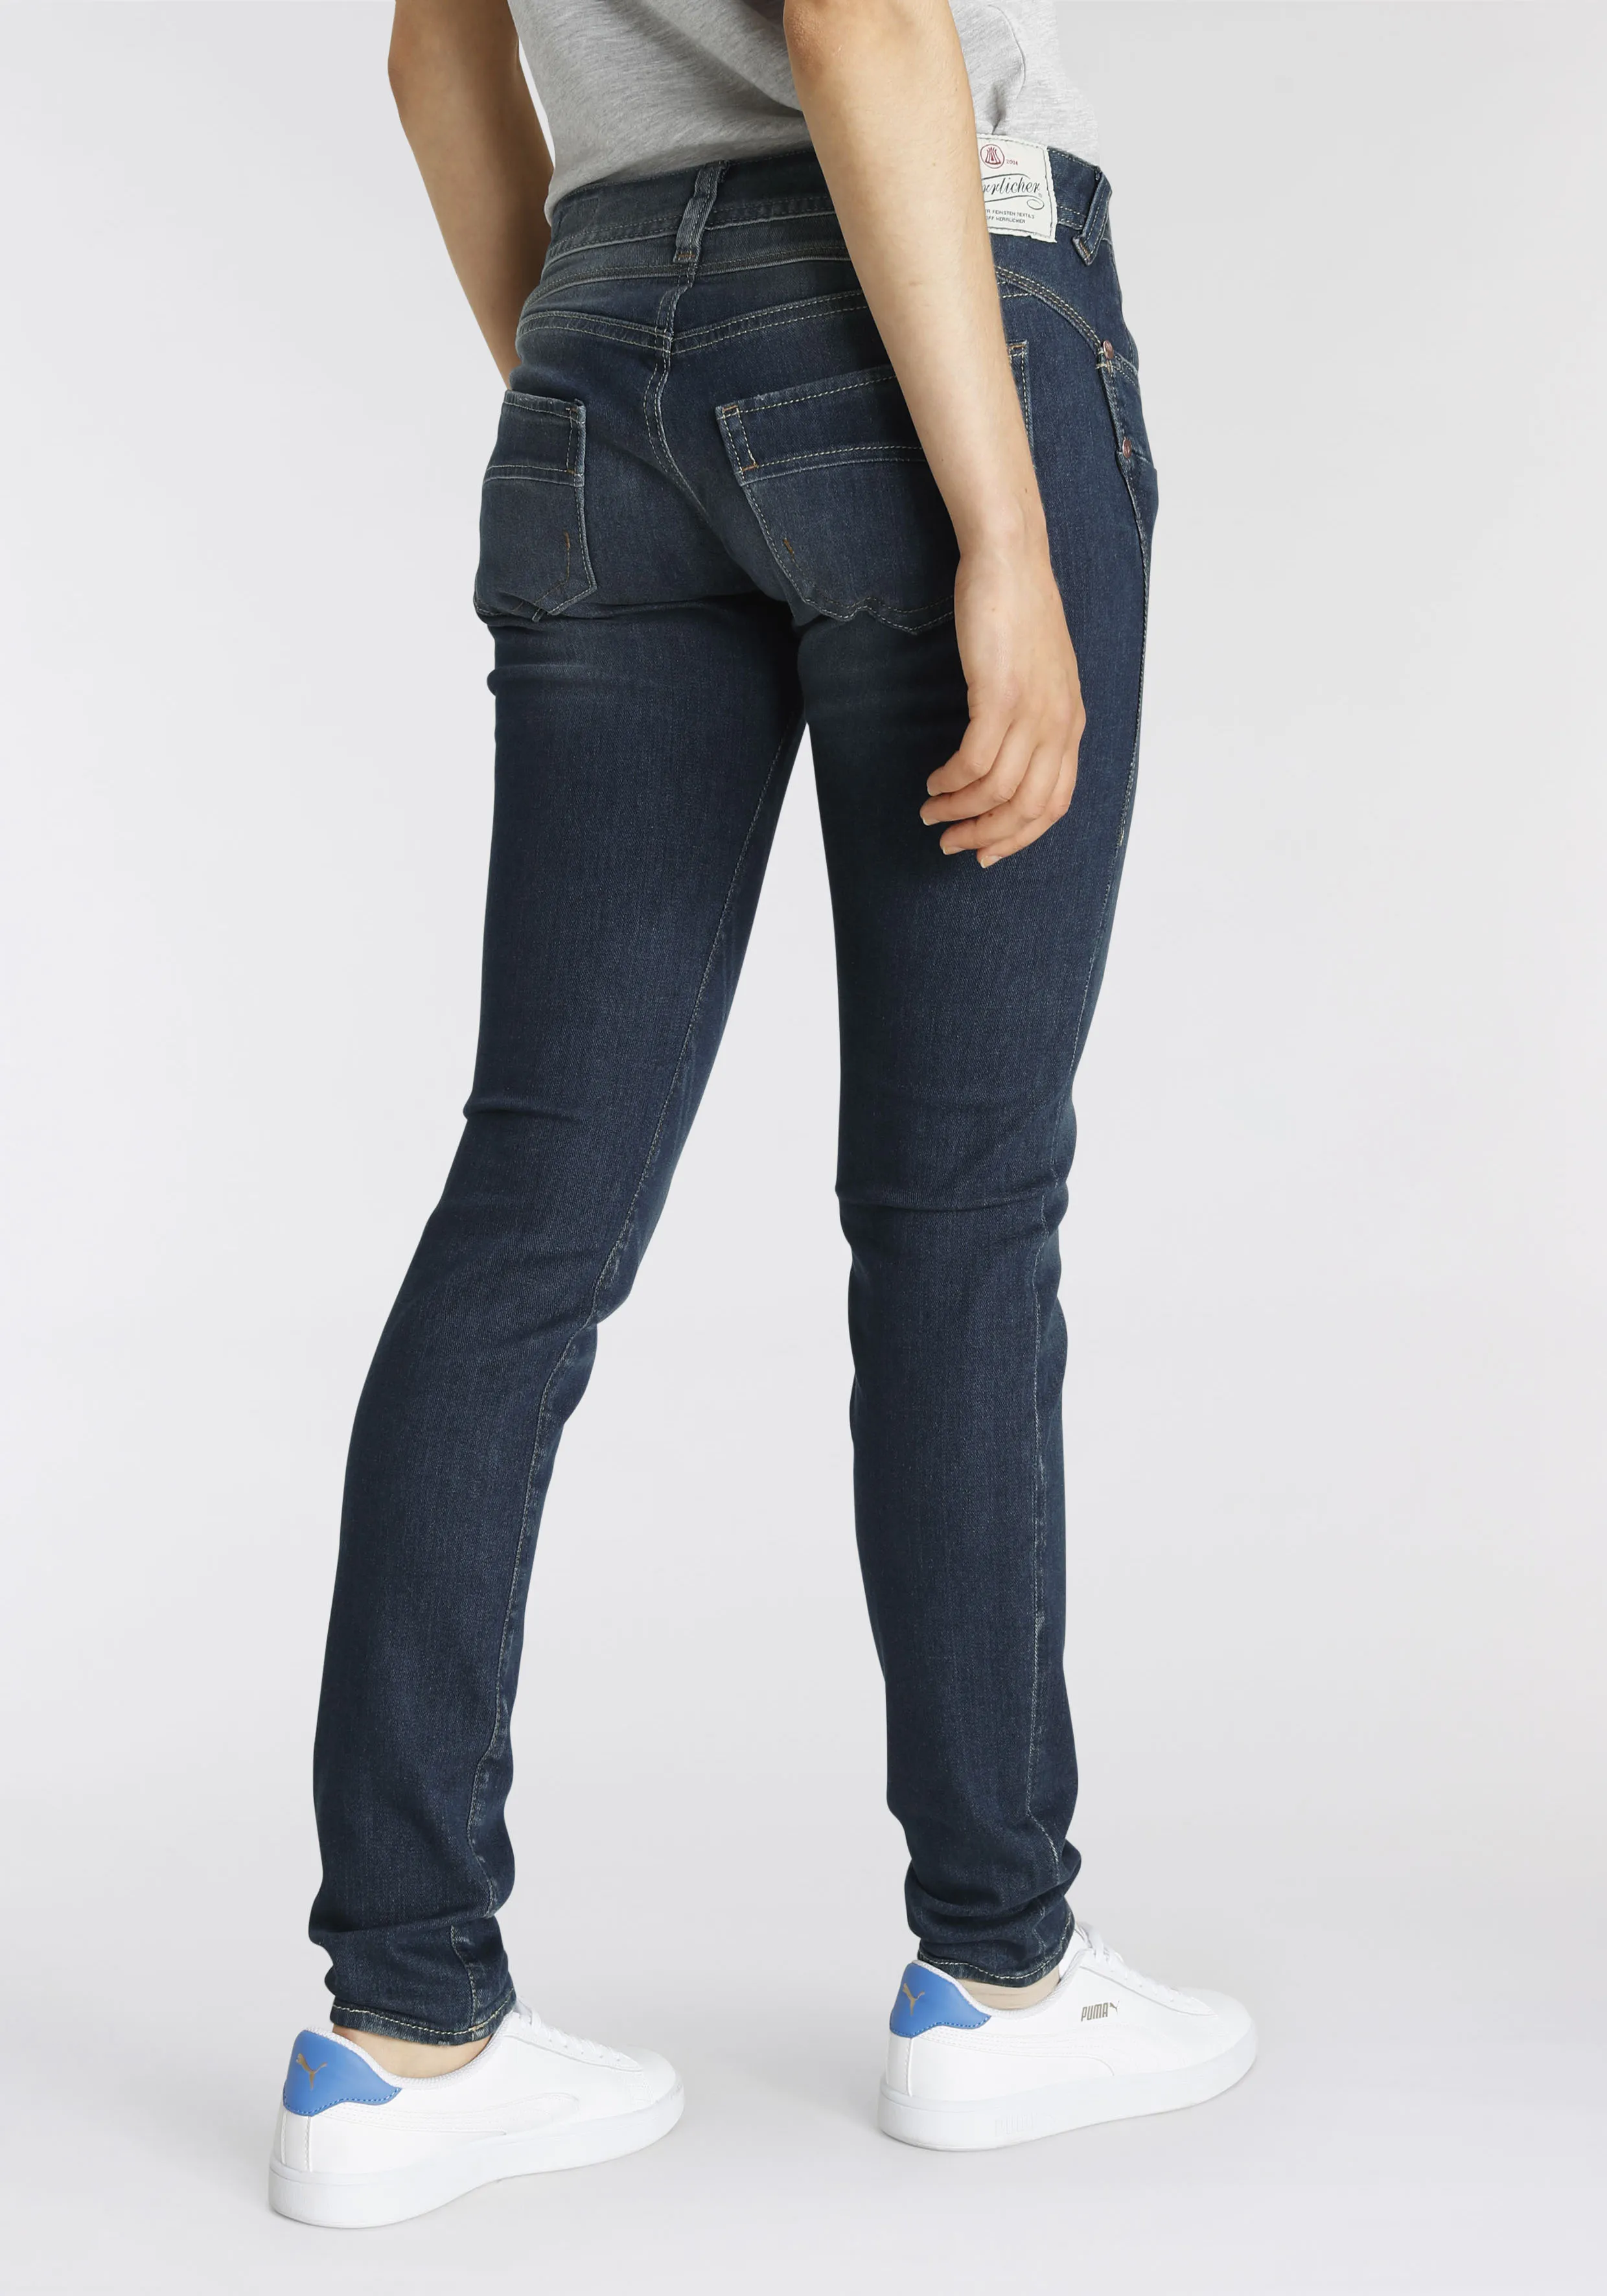 Slim-fit-Jeans HERRLICHER "PIPER" Gr. 25, Länge 30, blau (doom 93) Damen Jeans Röhrenjeans umweltfreundlich dank Kitotex Technologie